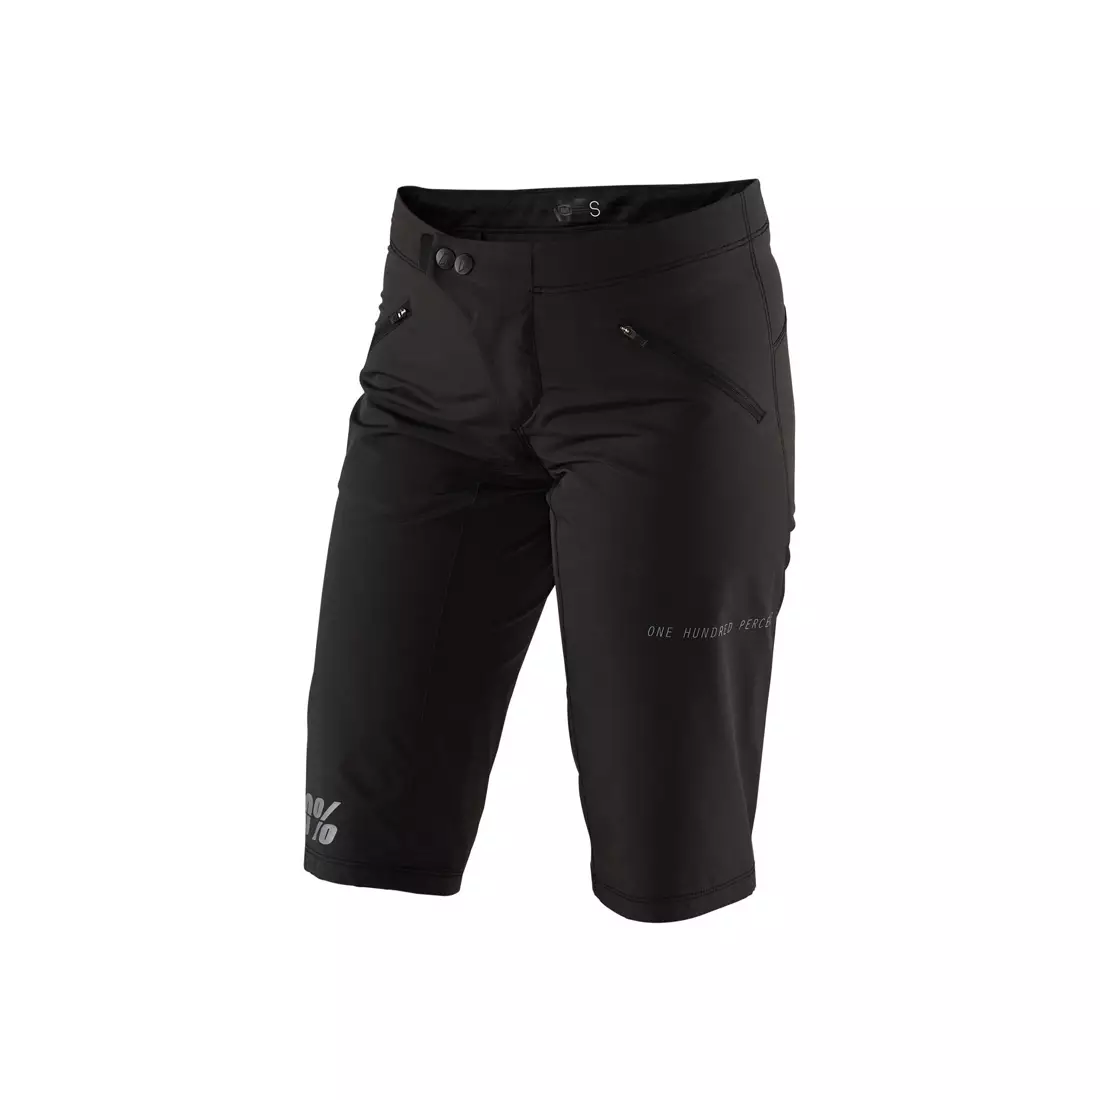 100% Pantaloni scurți pentru ciclism femei ridecamp negru STO-45901-001-11